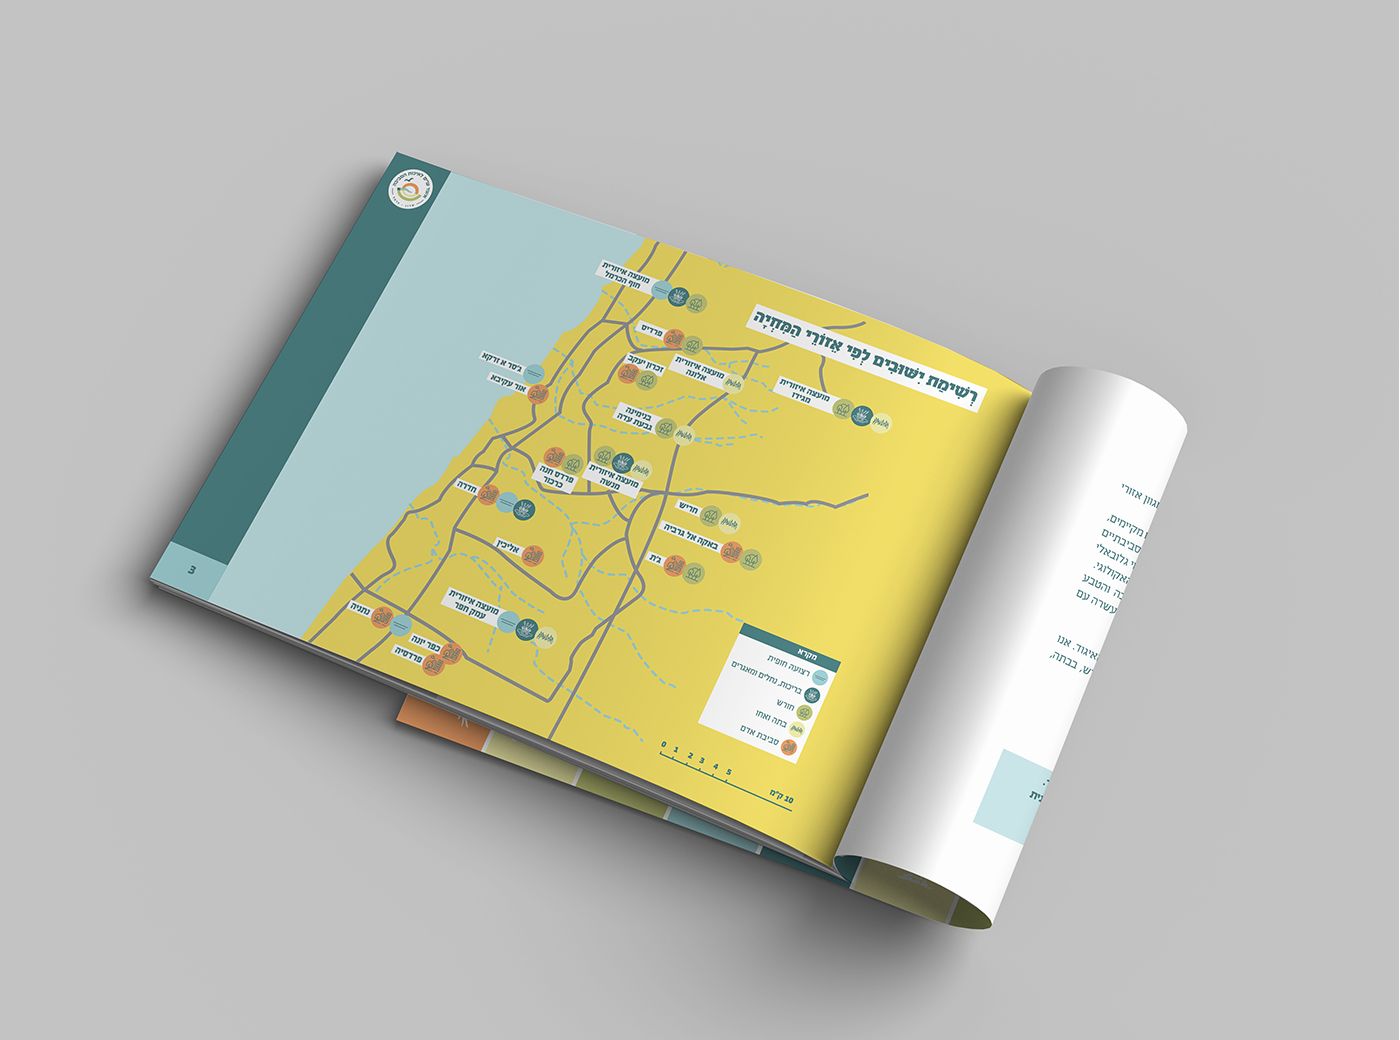 עיצוב מפה, מדריך ציפורים, איגוד ערים שרון כרמל, סטודיו הילה כרמלי, מדריך ציפורים